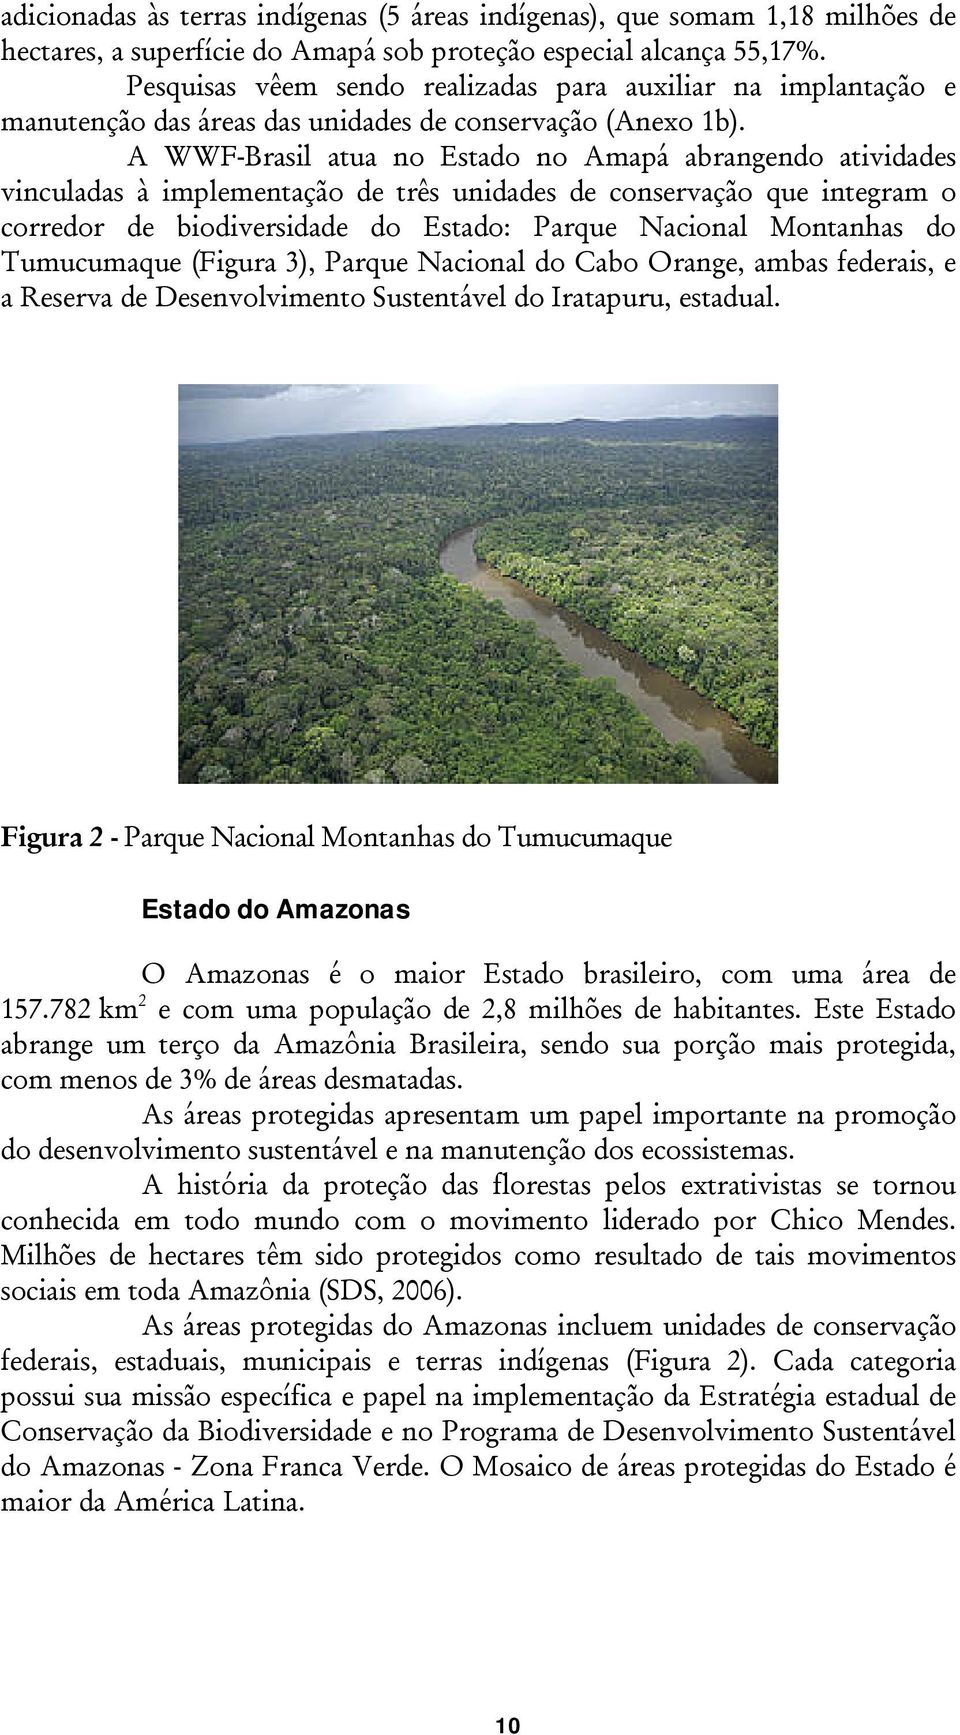 A WWF-Brasil atua no Estado no Amapá abrangendo atividades vinculadas à implementação de três unidades de conservação que integram o corredor de biodiversidade do Estado: Parque Nacional Montanhas do